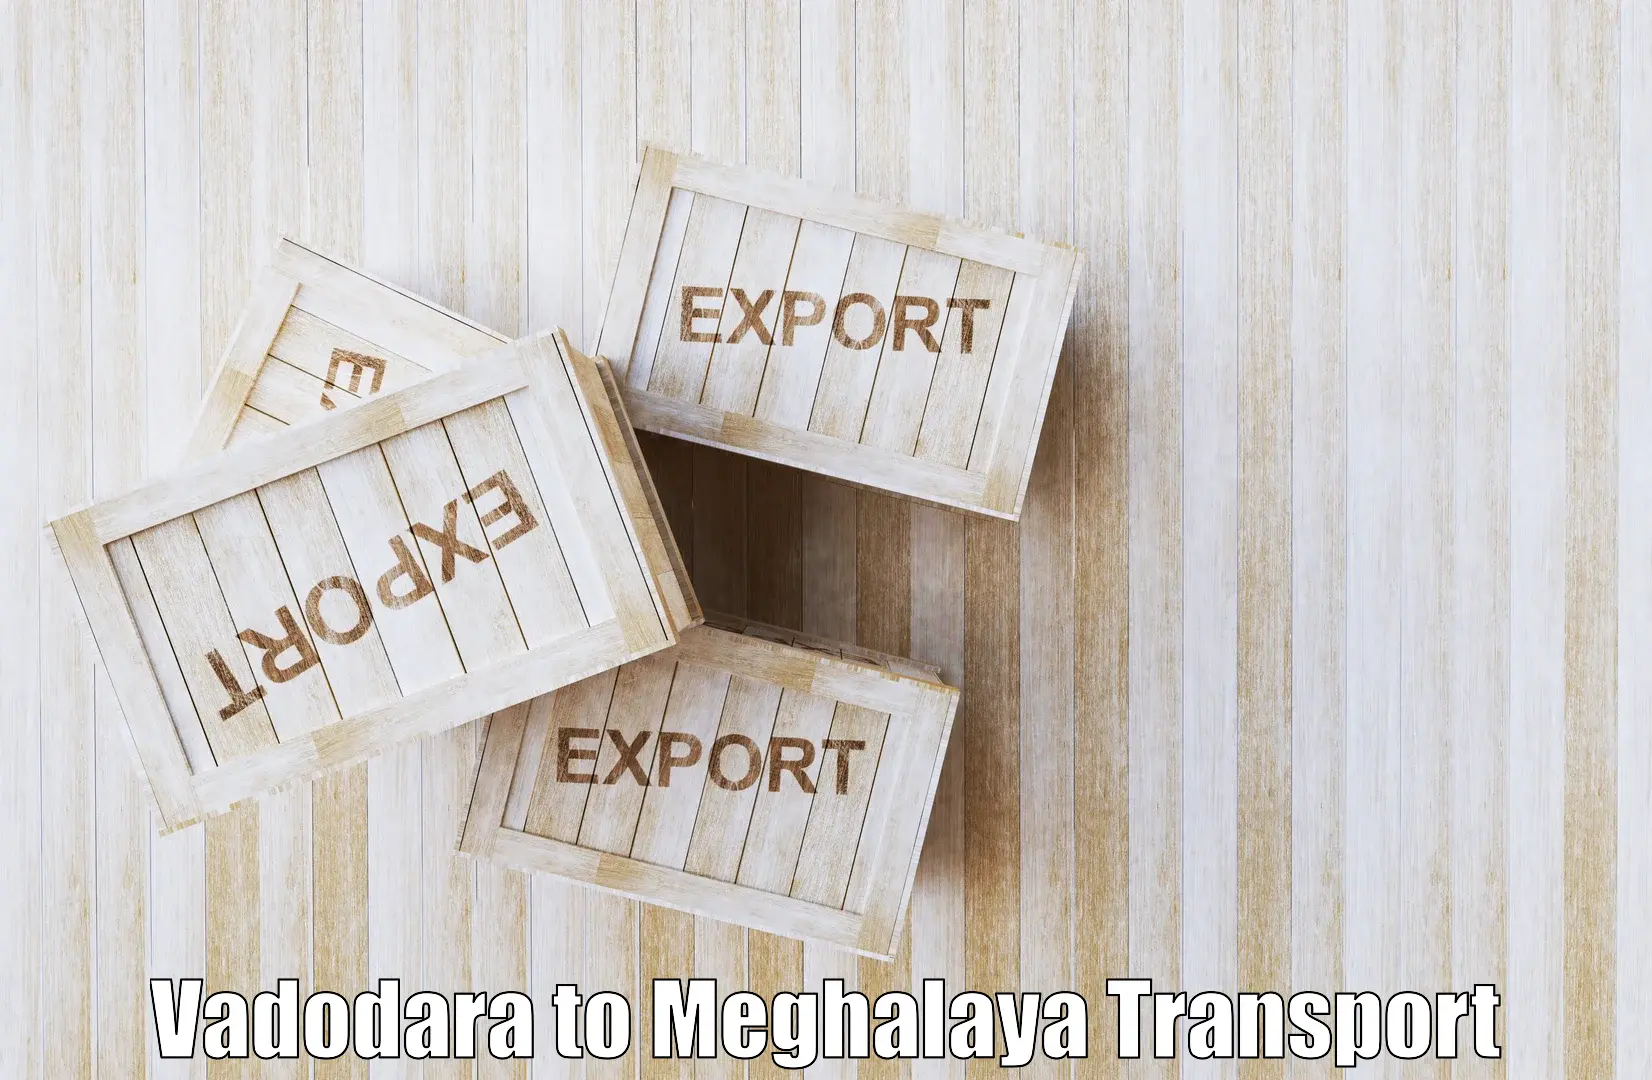 Interstate goods transport Vadodara to Nongpoh